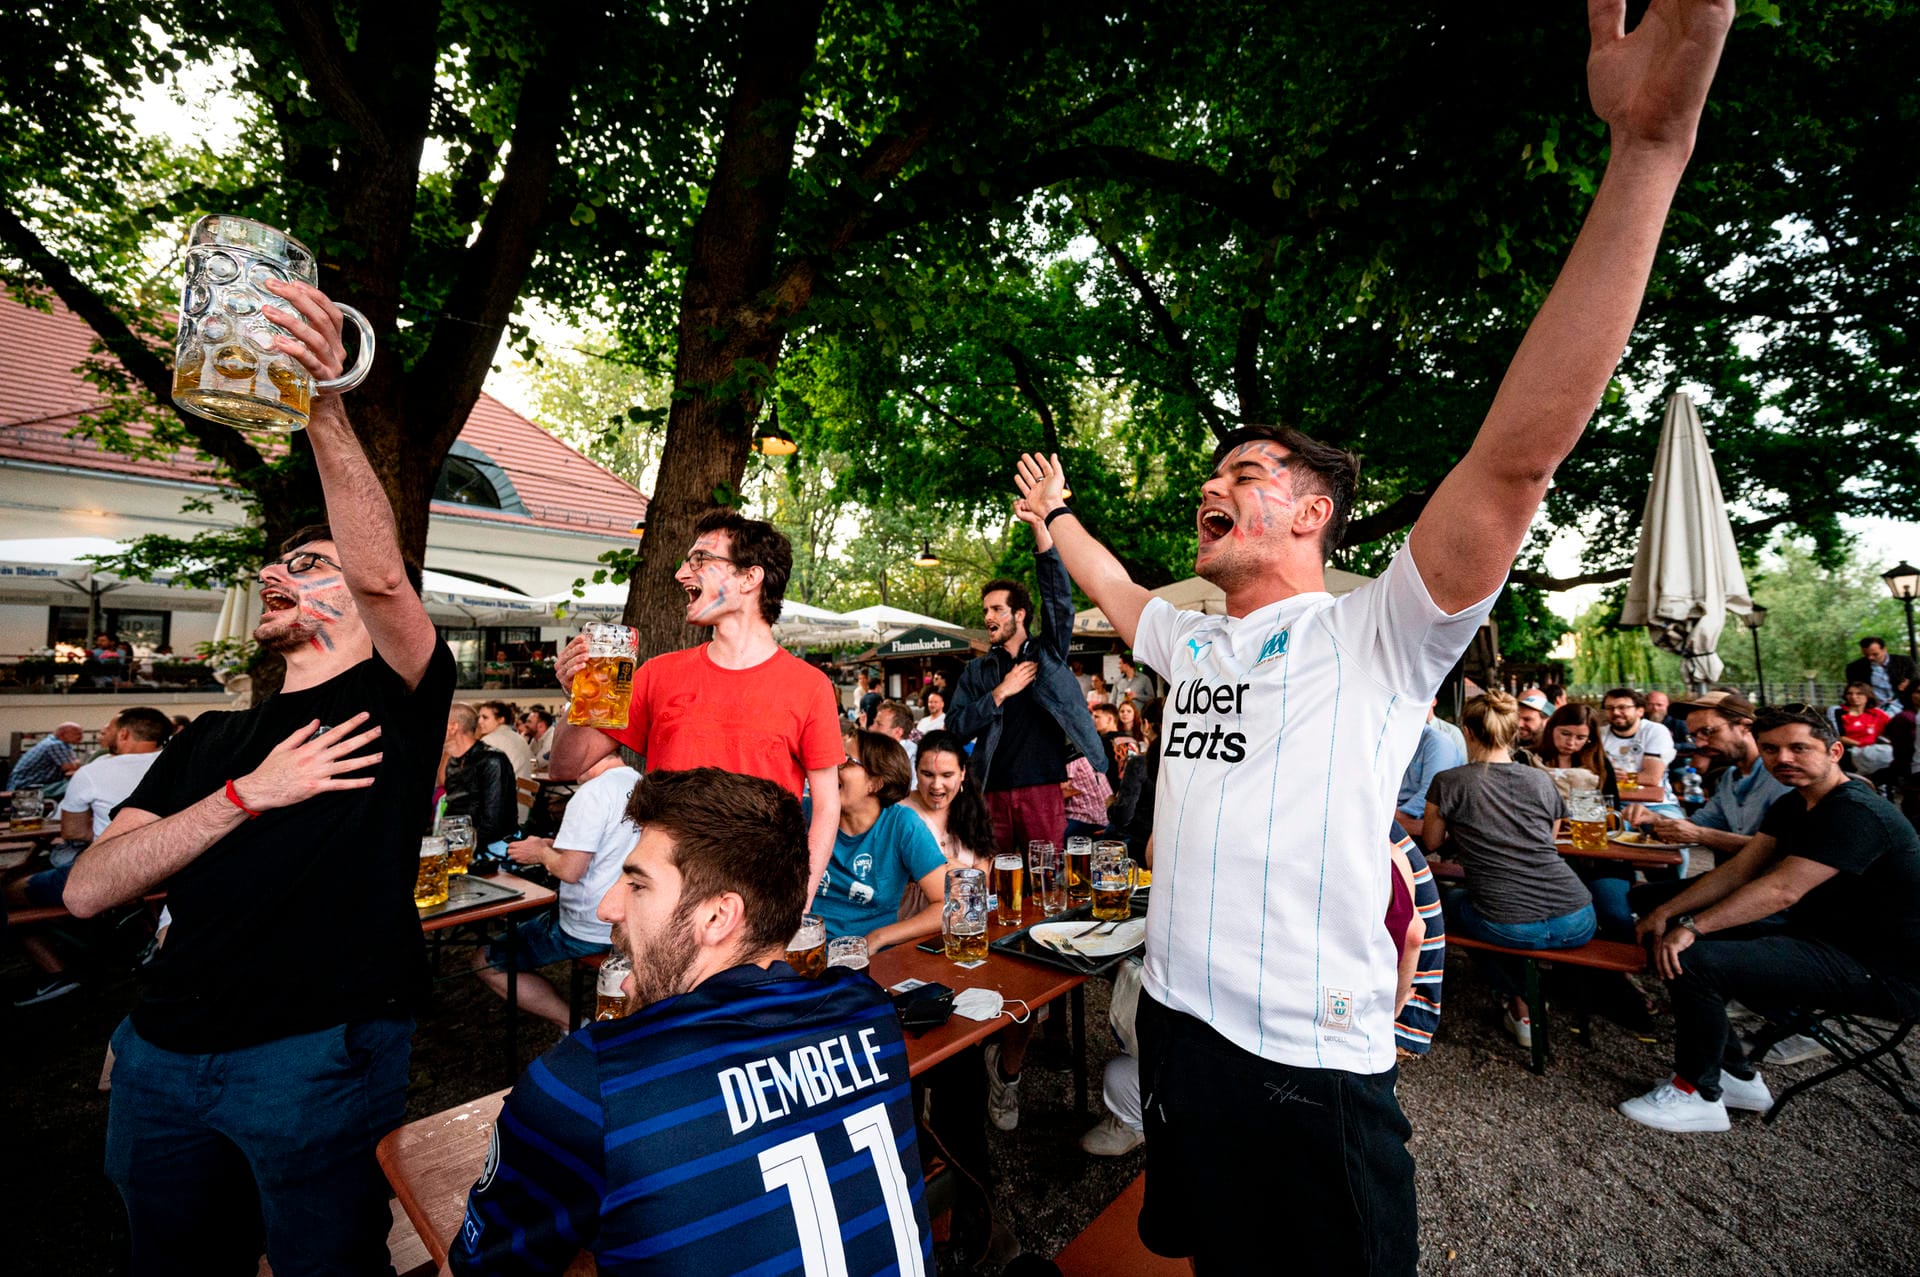 Jubel bei den französischen Fans: Diese Gruppe im Berliner Zollpackhof hat gerade Mats Hummels Eigentor gesehen.